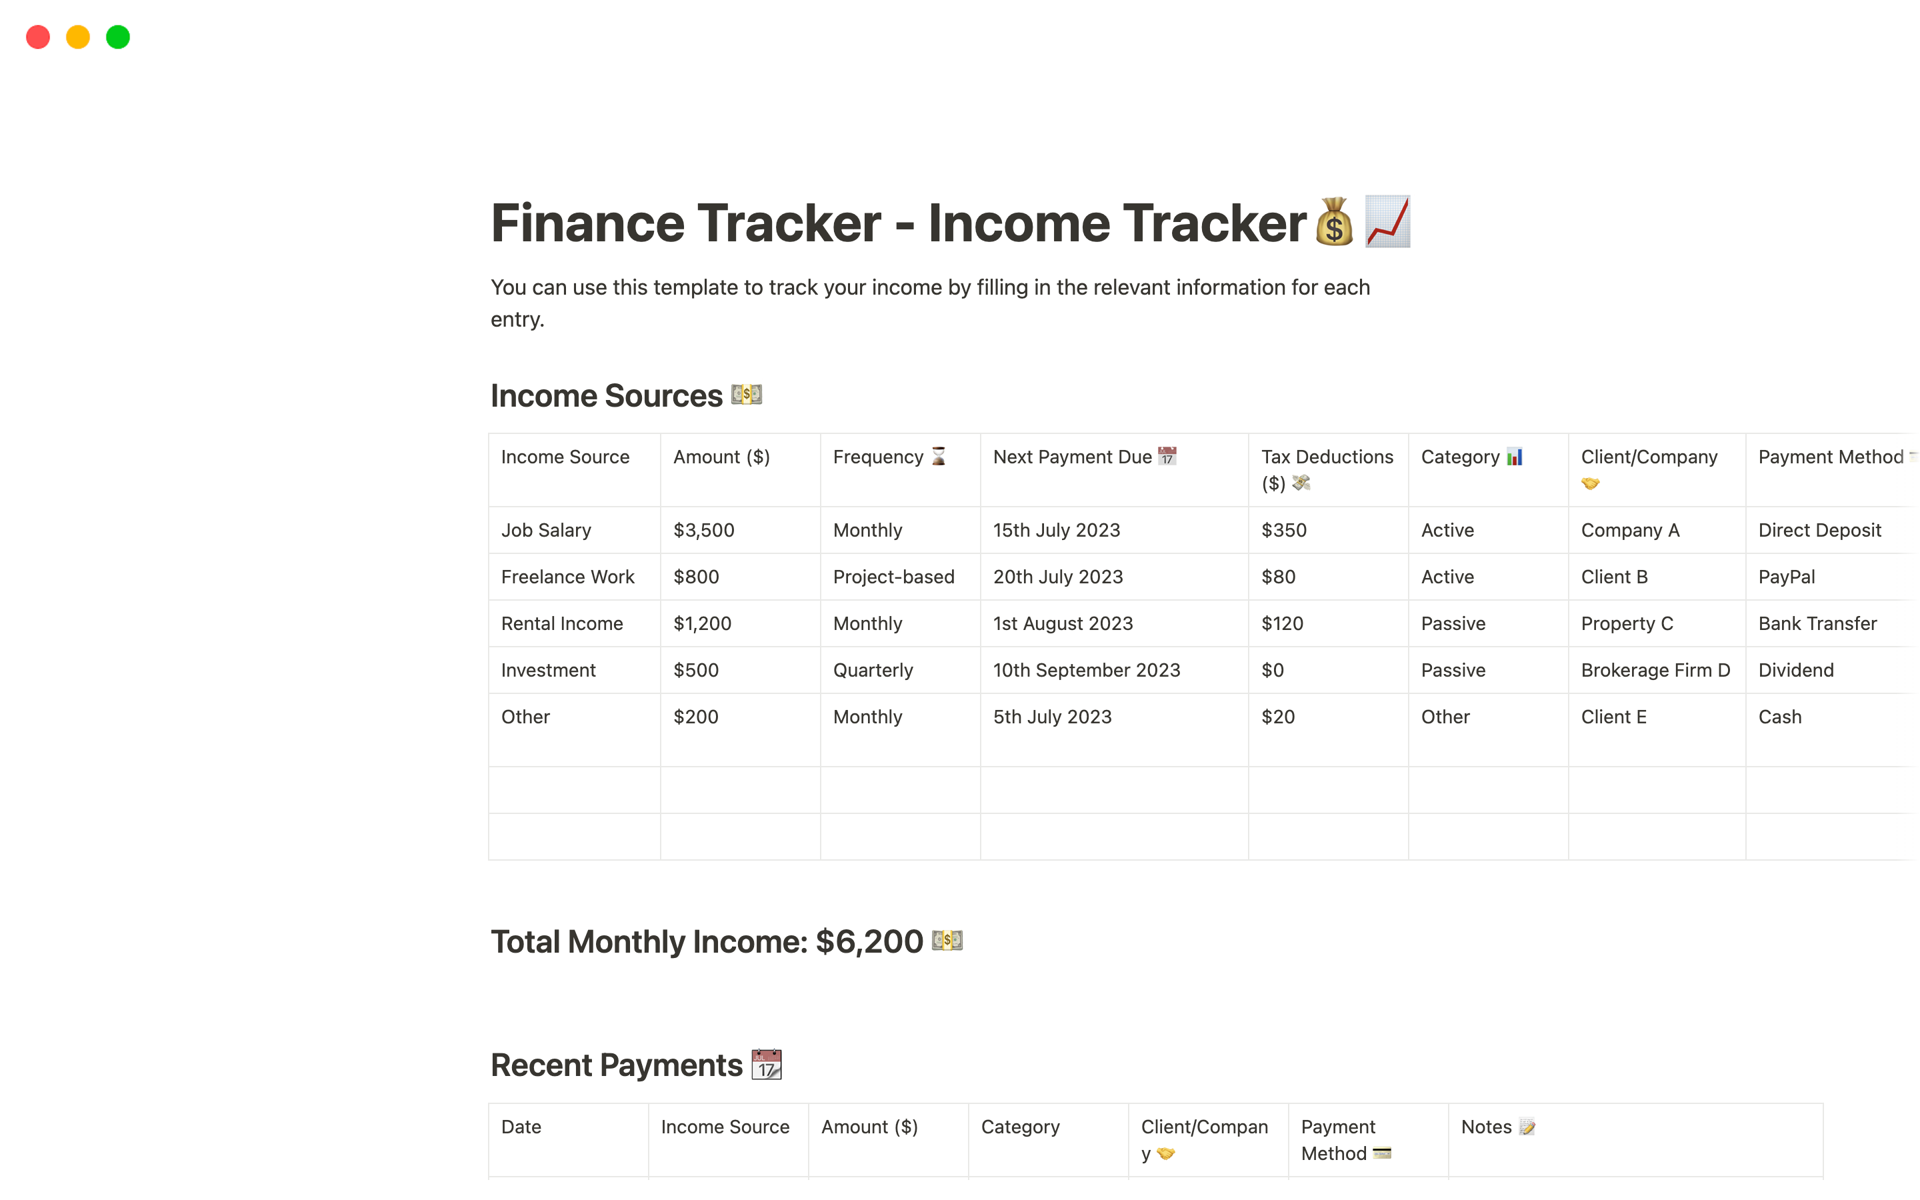 En förhandsgranskning av mallen för Finance Tracker - Income Tracker